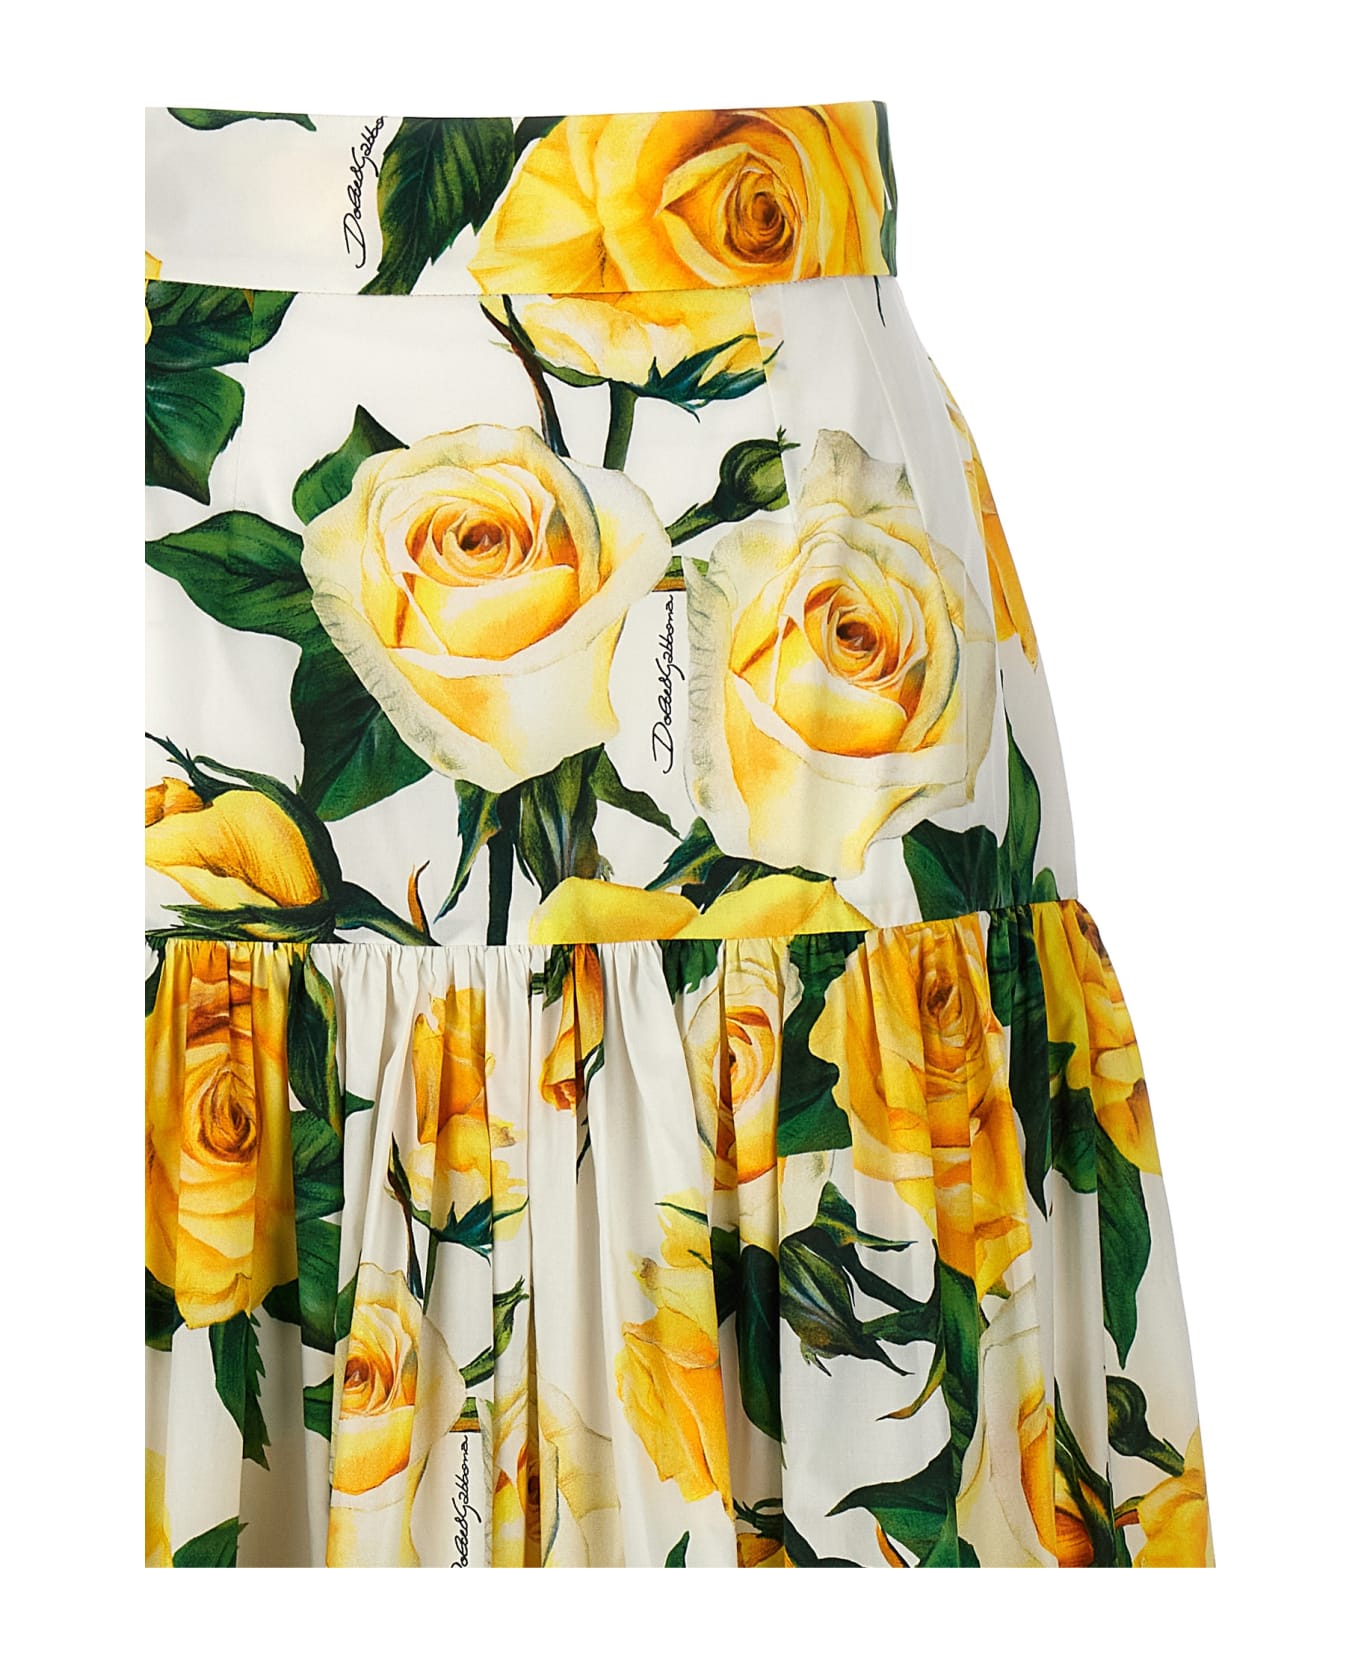 Dolce & Gabbana 'rose Gialle' Skirt - Multicolor